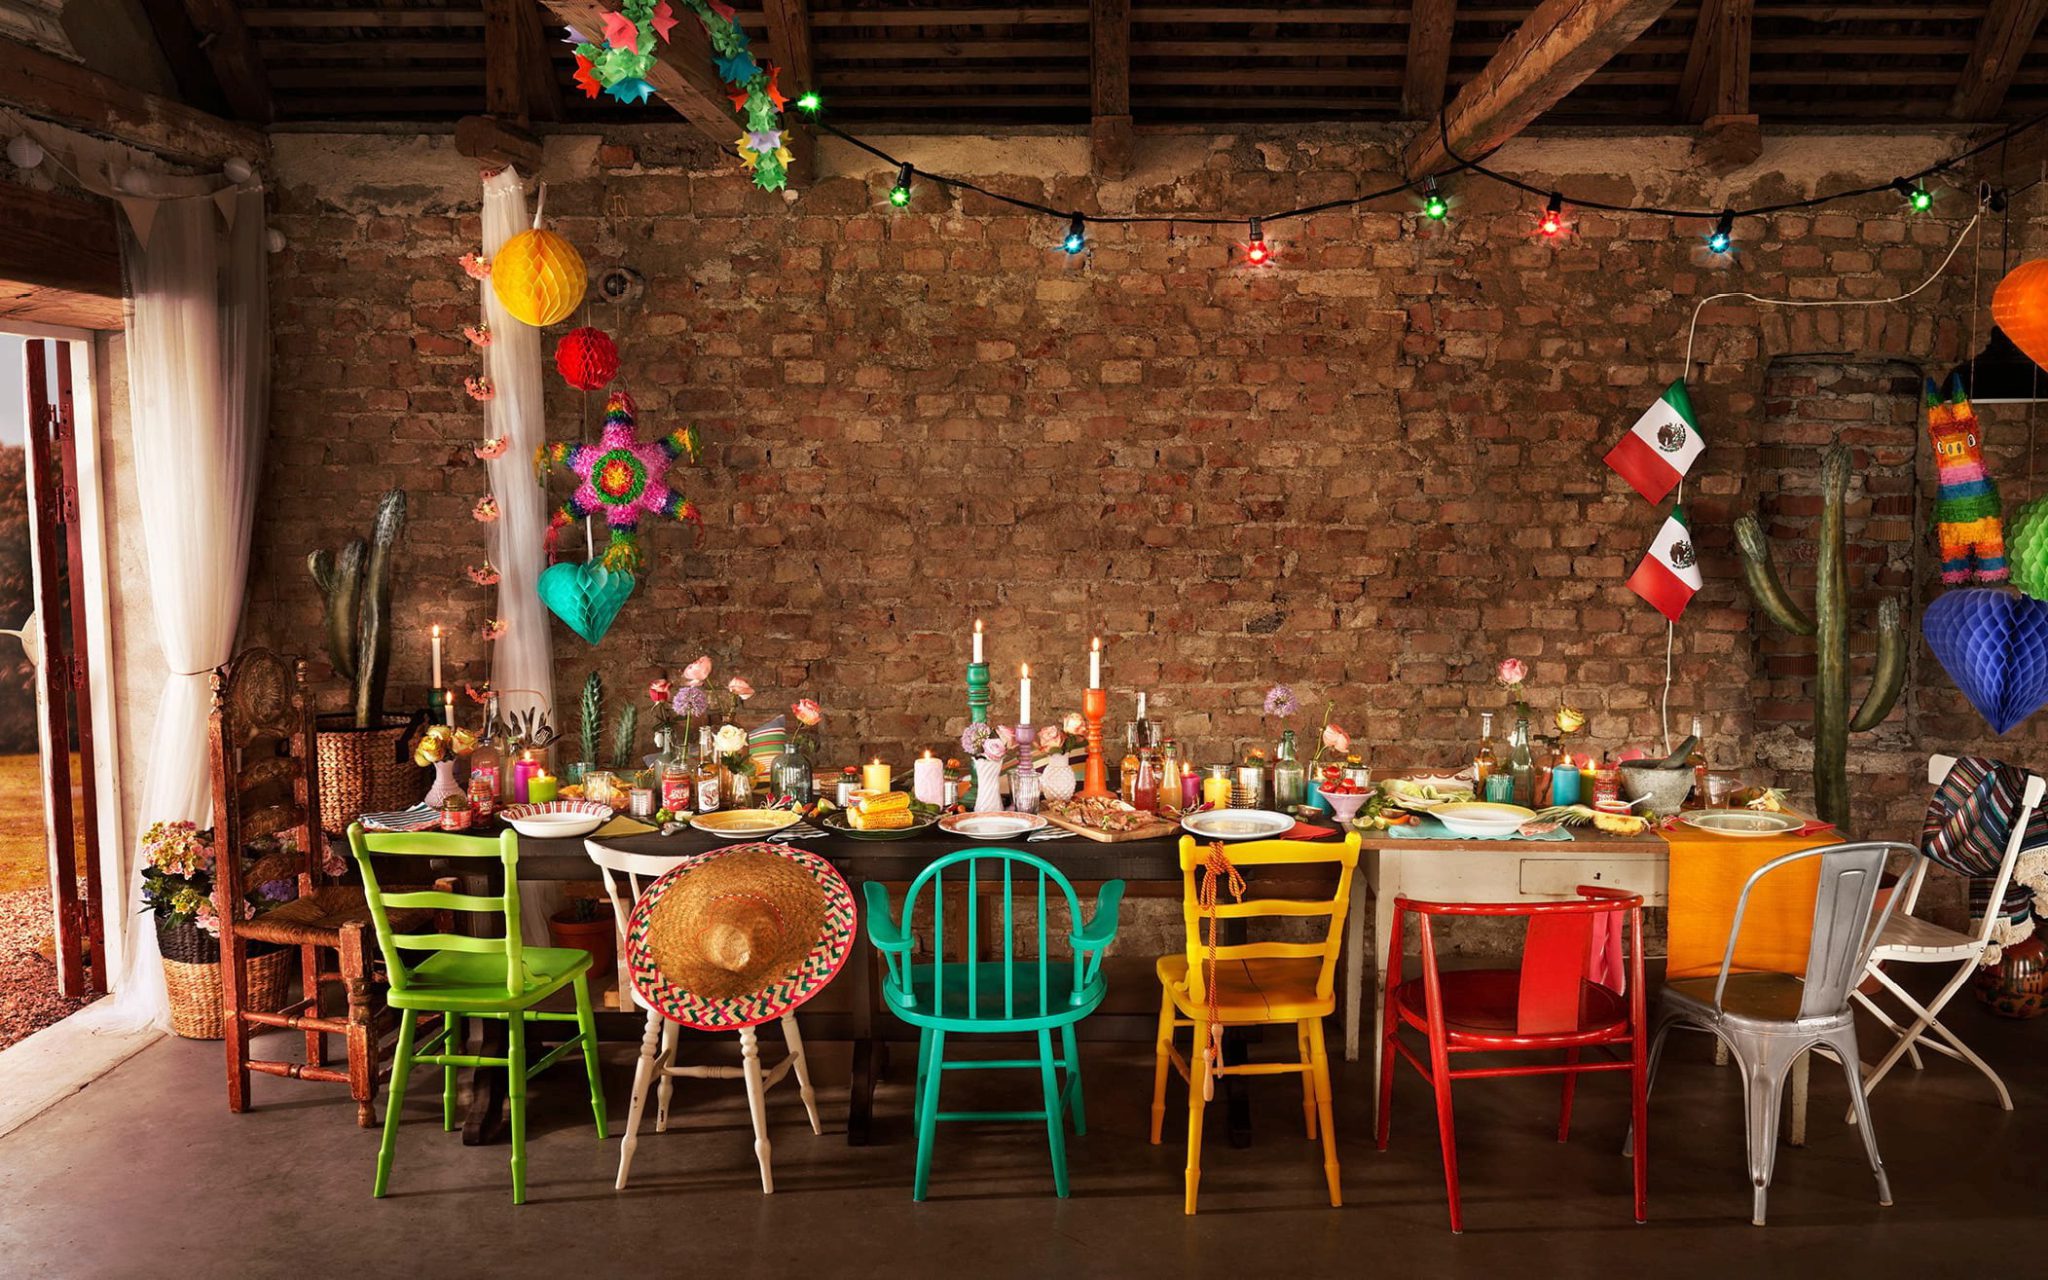 Långbord dukat med mexikanskt tema och färgglada stolar runt bordet